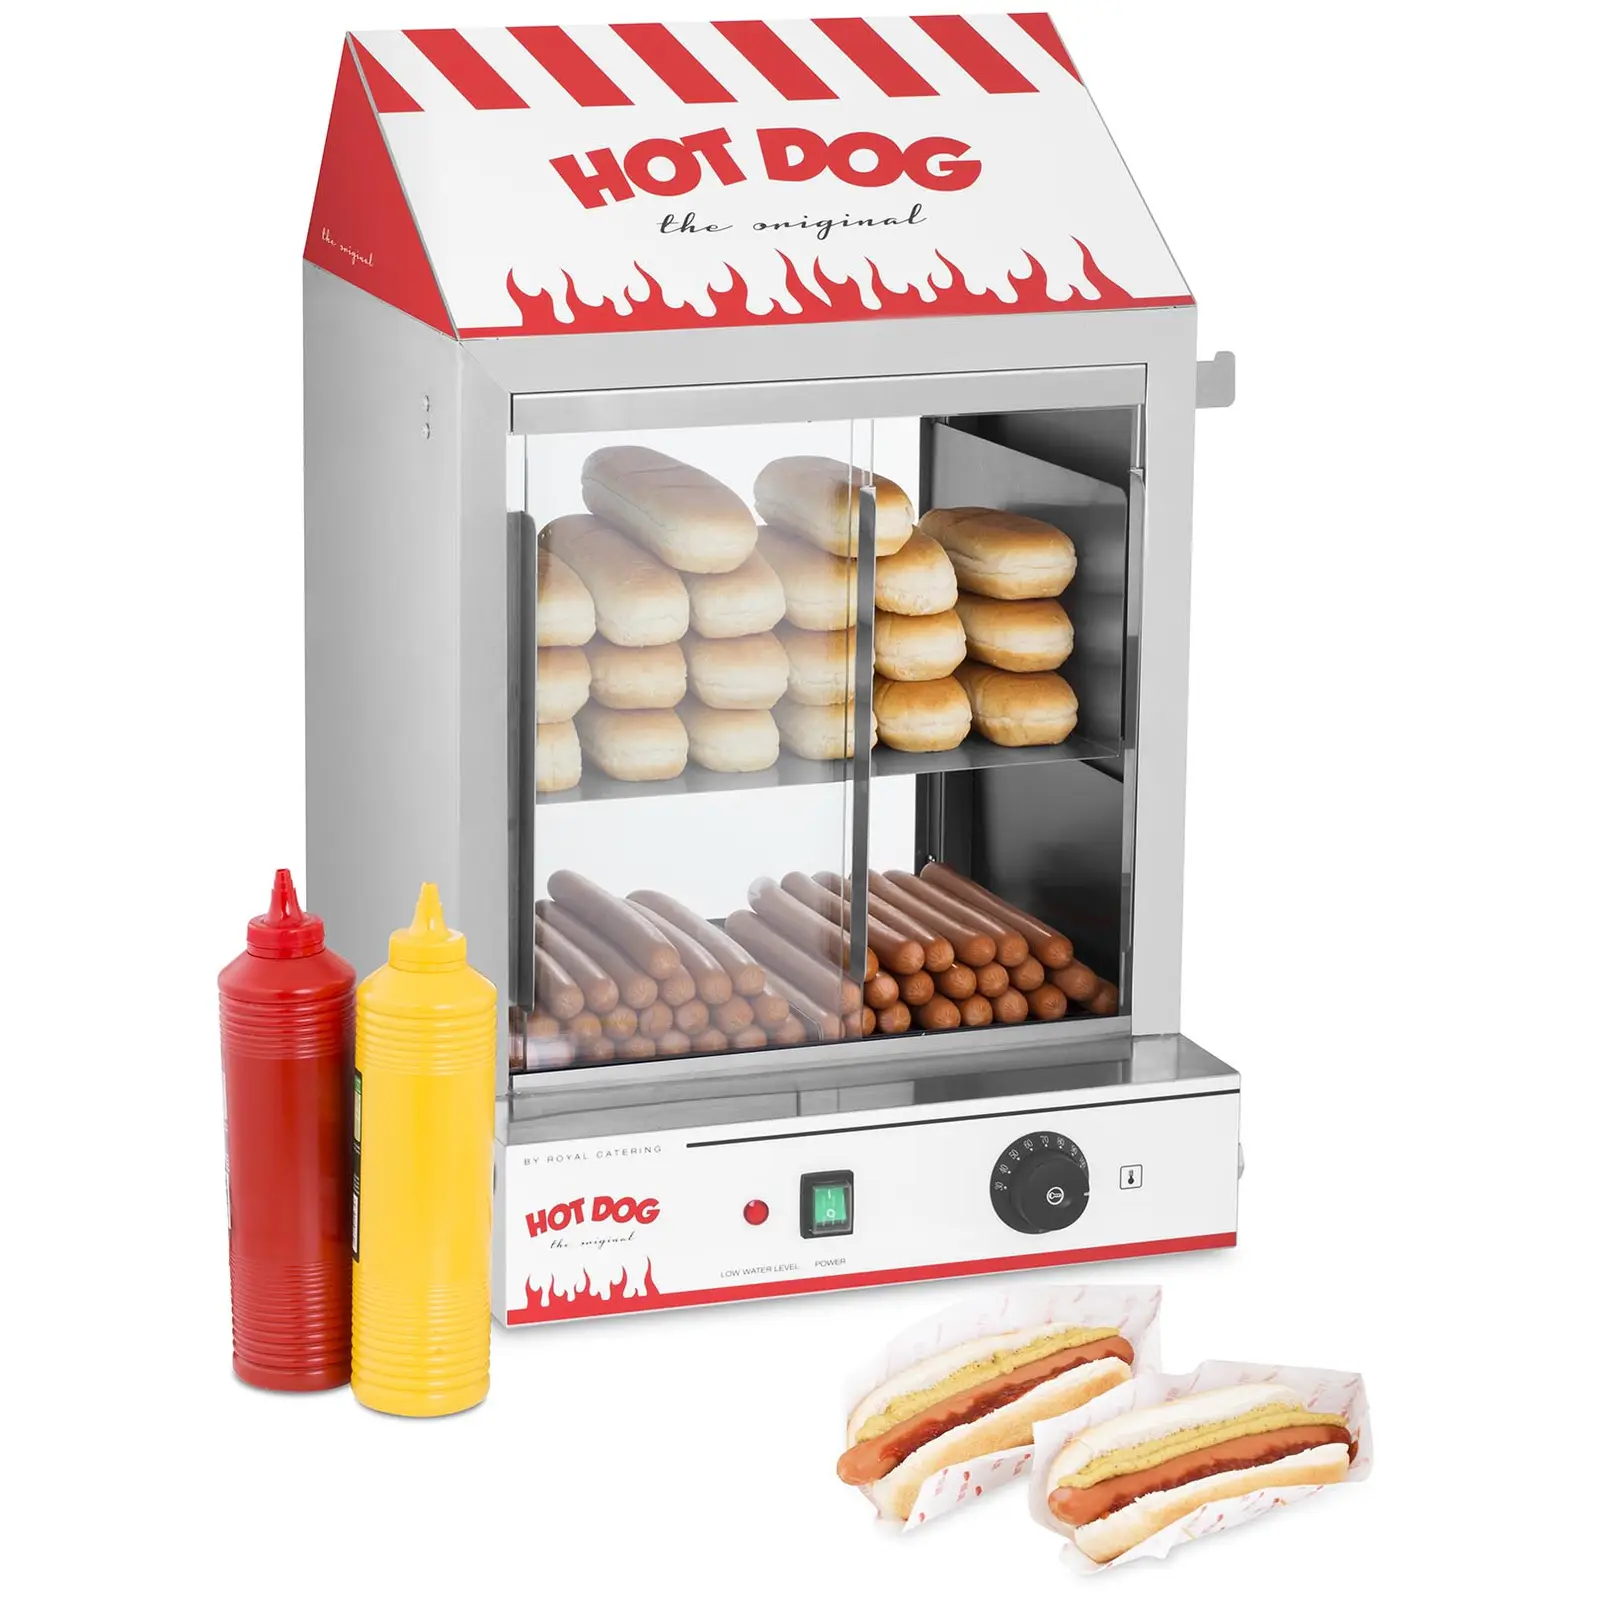 Macchine per hot dog